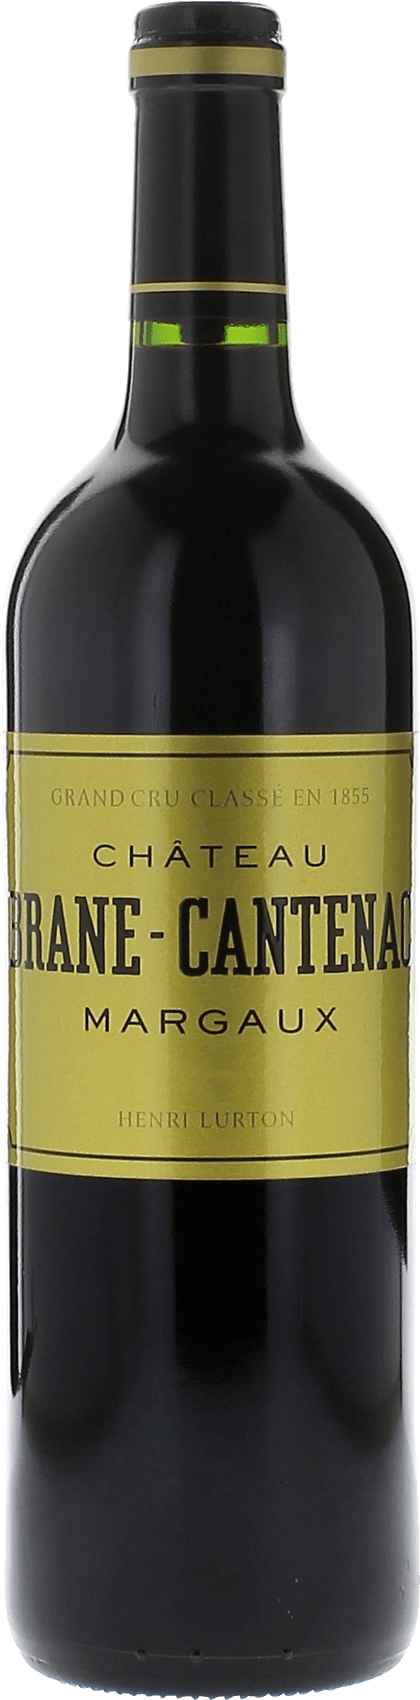 Brane cantenac 1988 2me Grand cru class Margaux, Bordeaux rouge